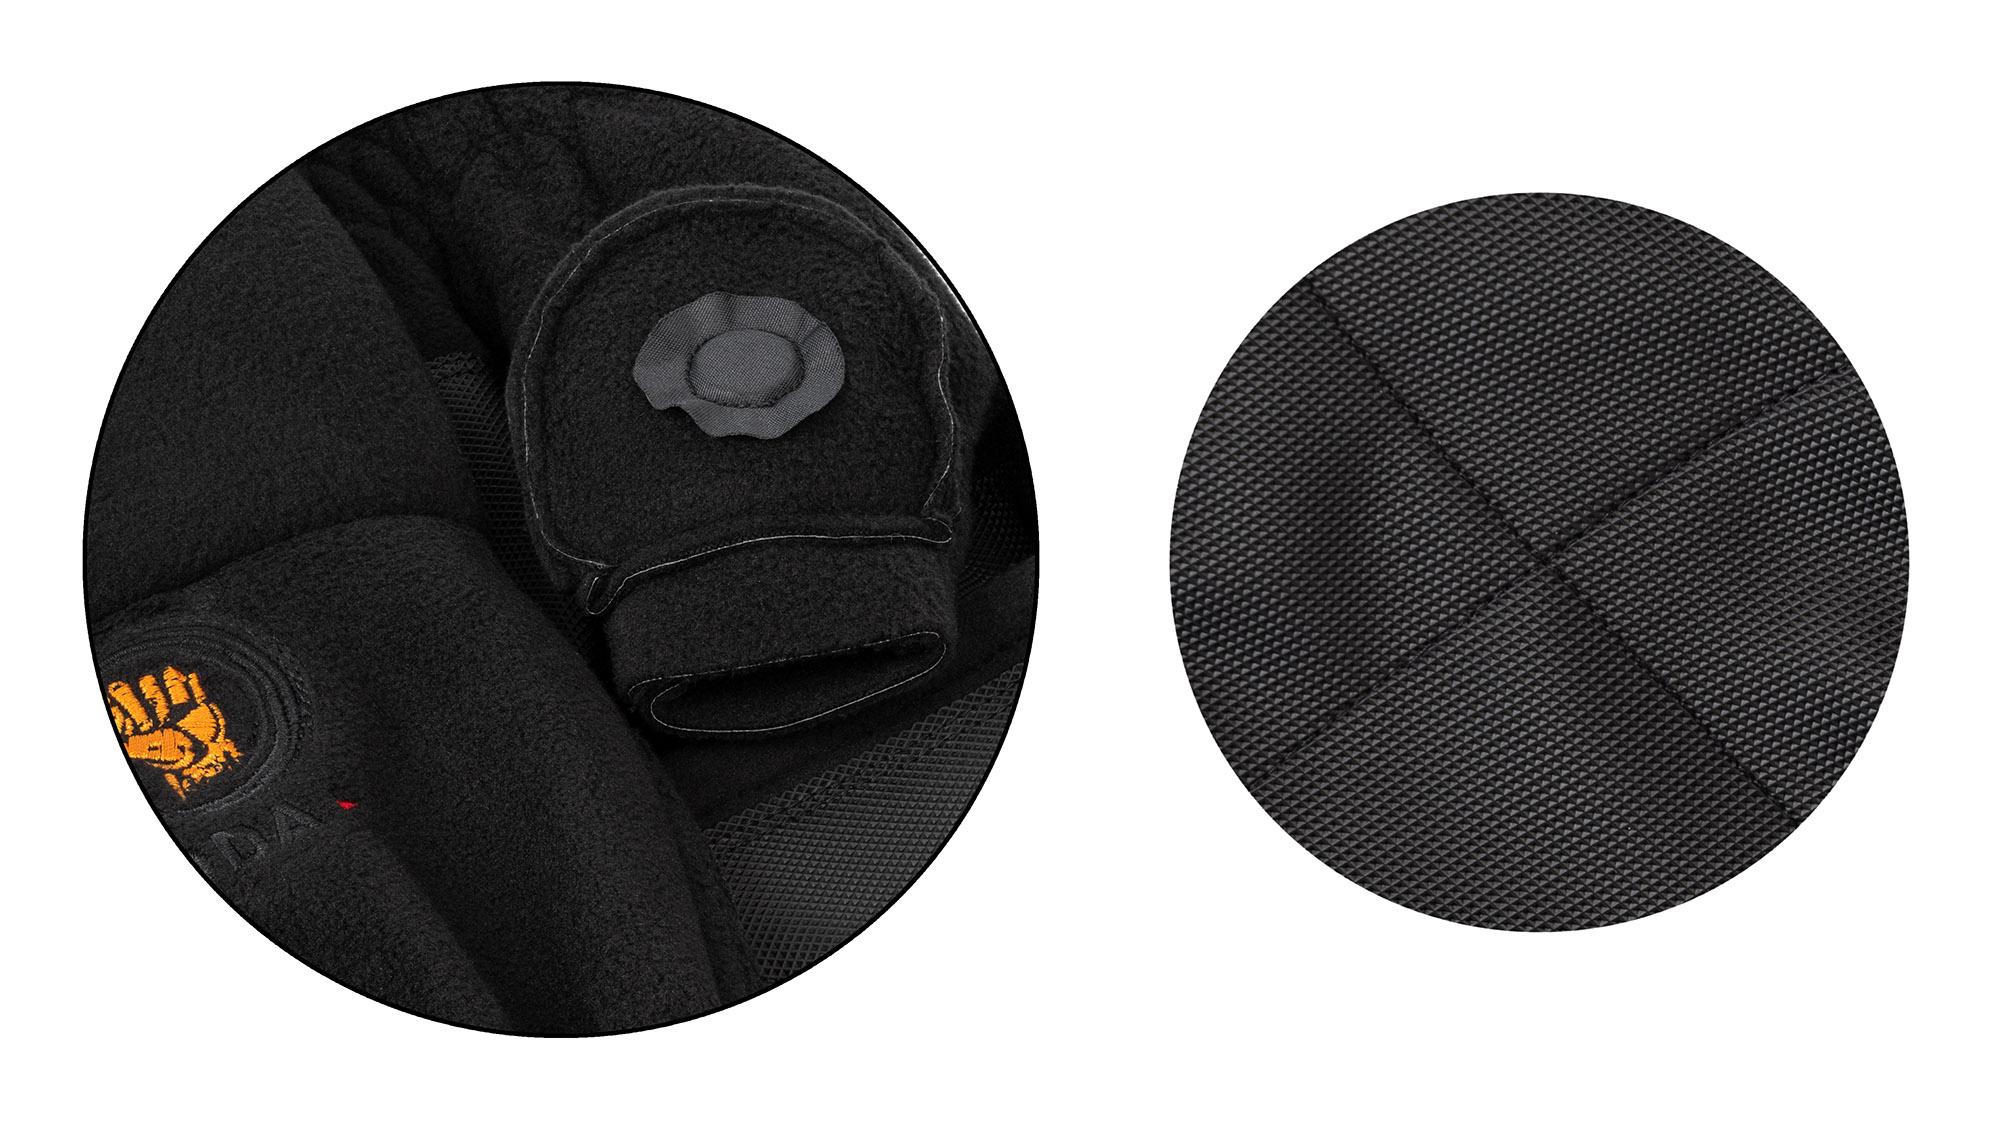 Перчатки-варежки KYODA с откидным верхом зимние, водонепроницаемые, флис, цвет чёрный, размер XL